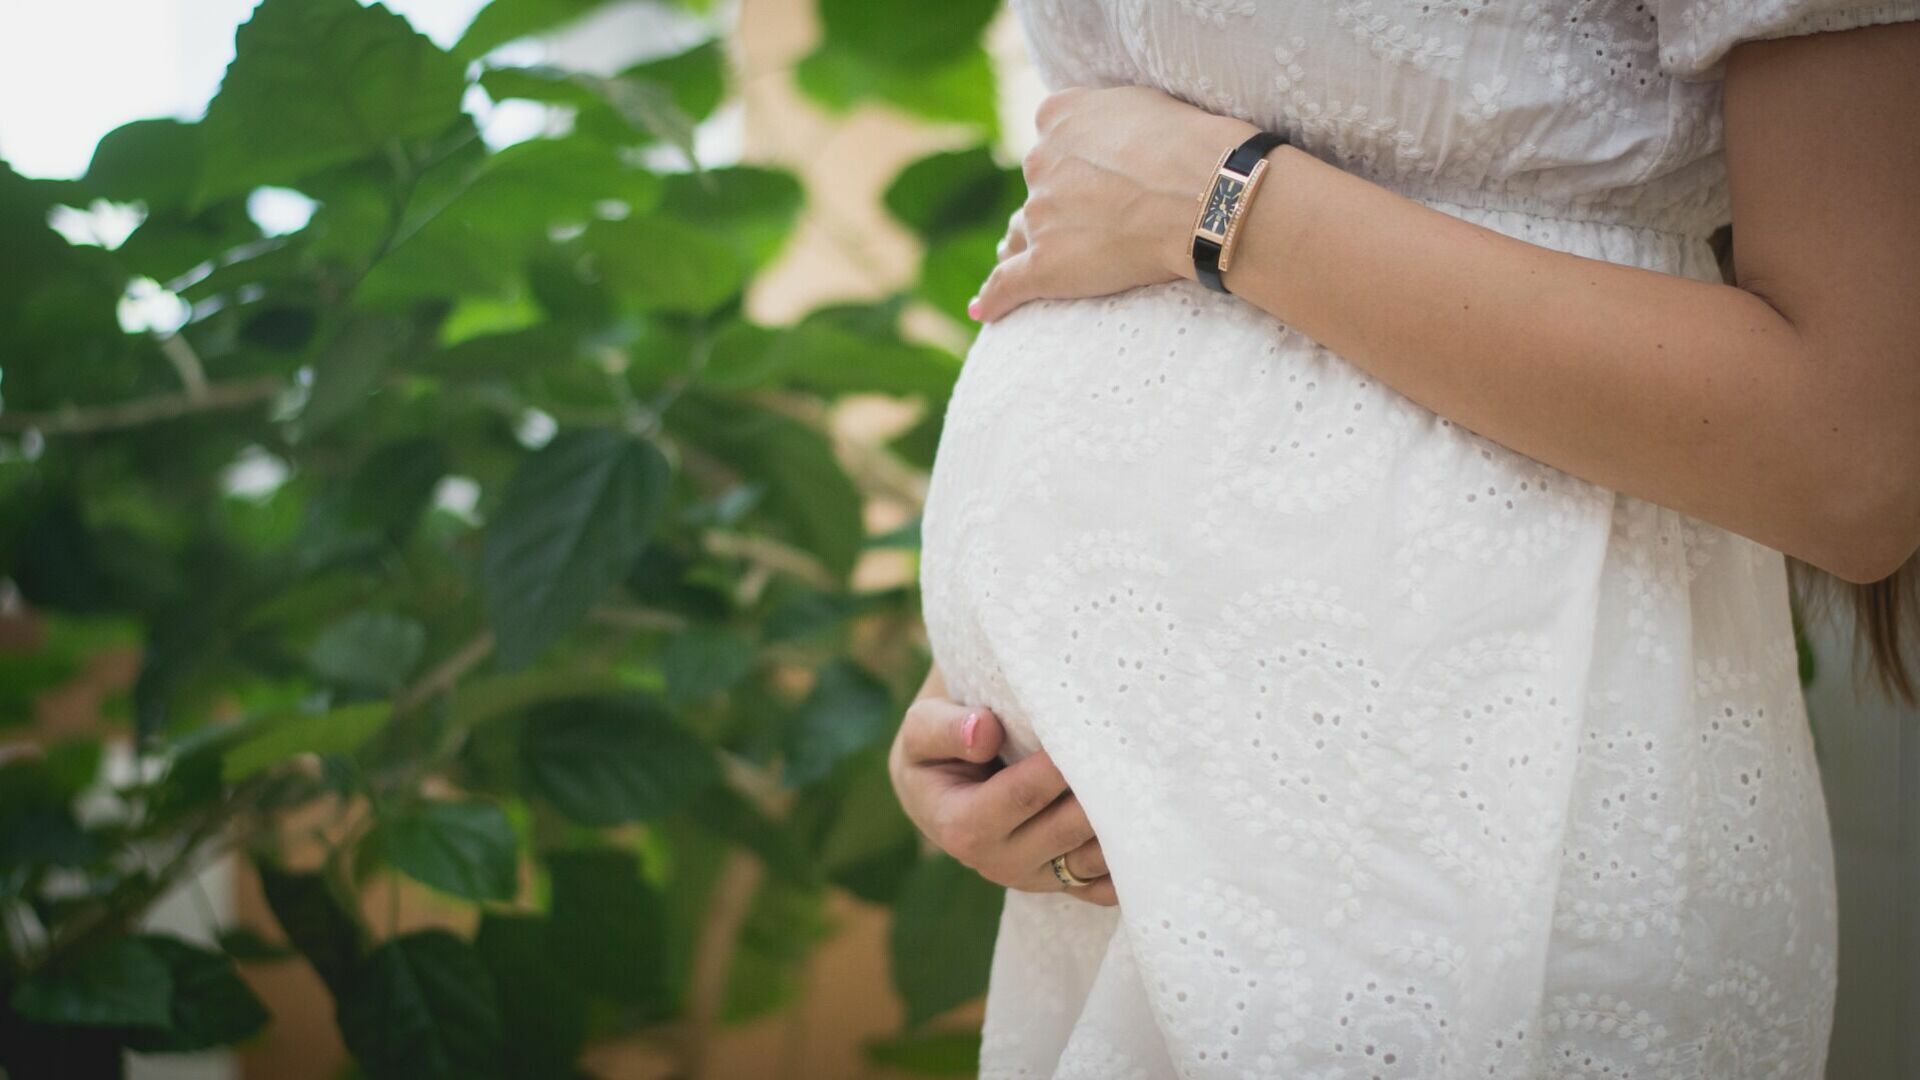 Пособие по беременности и родам получили 1,8 тыс. белгородок